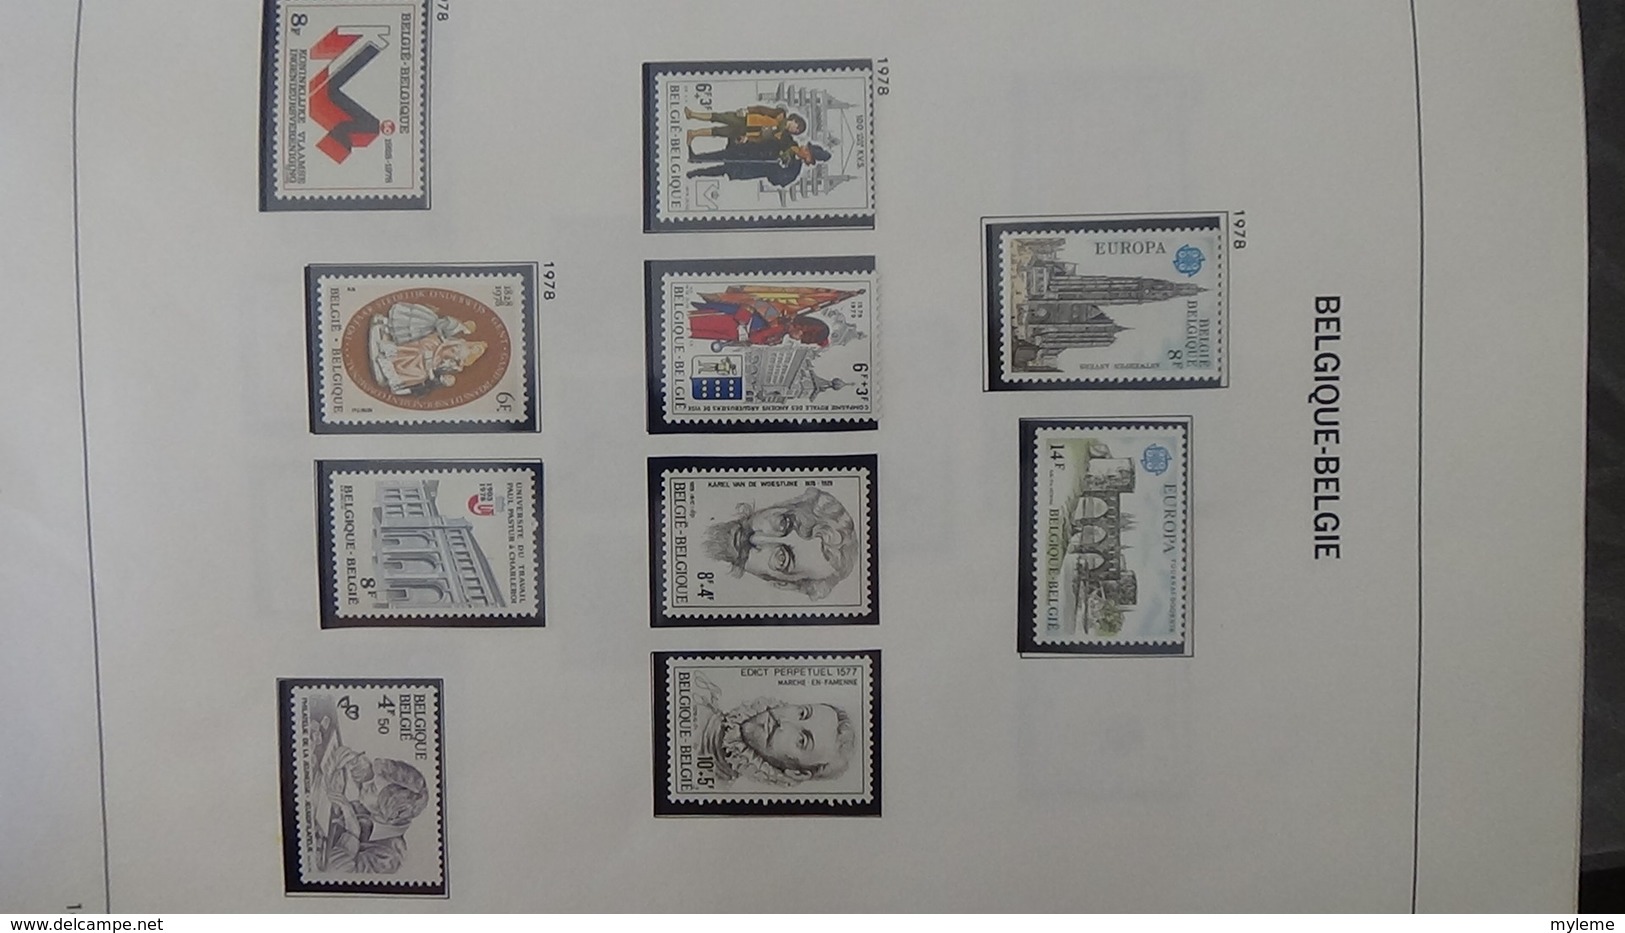 Grosse collection BELGIQUE en DAVO de 1971 à 1984 en blocs, carnets et timbres ** . Bien suivie A saisir !!!